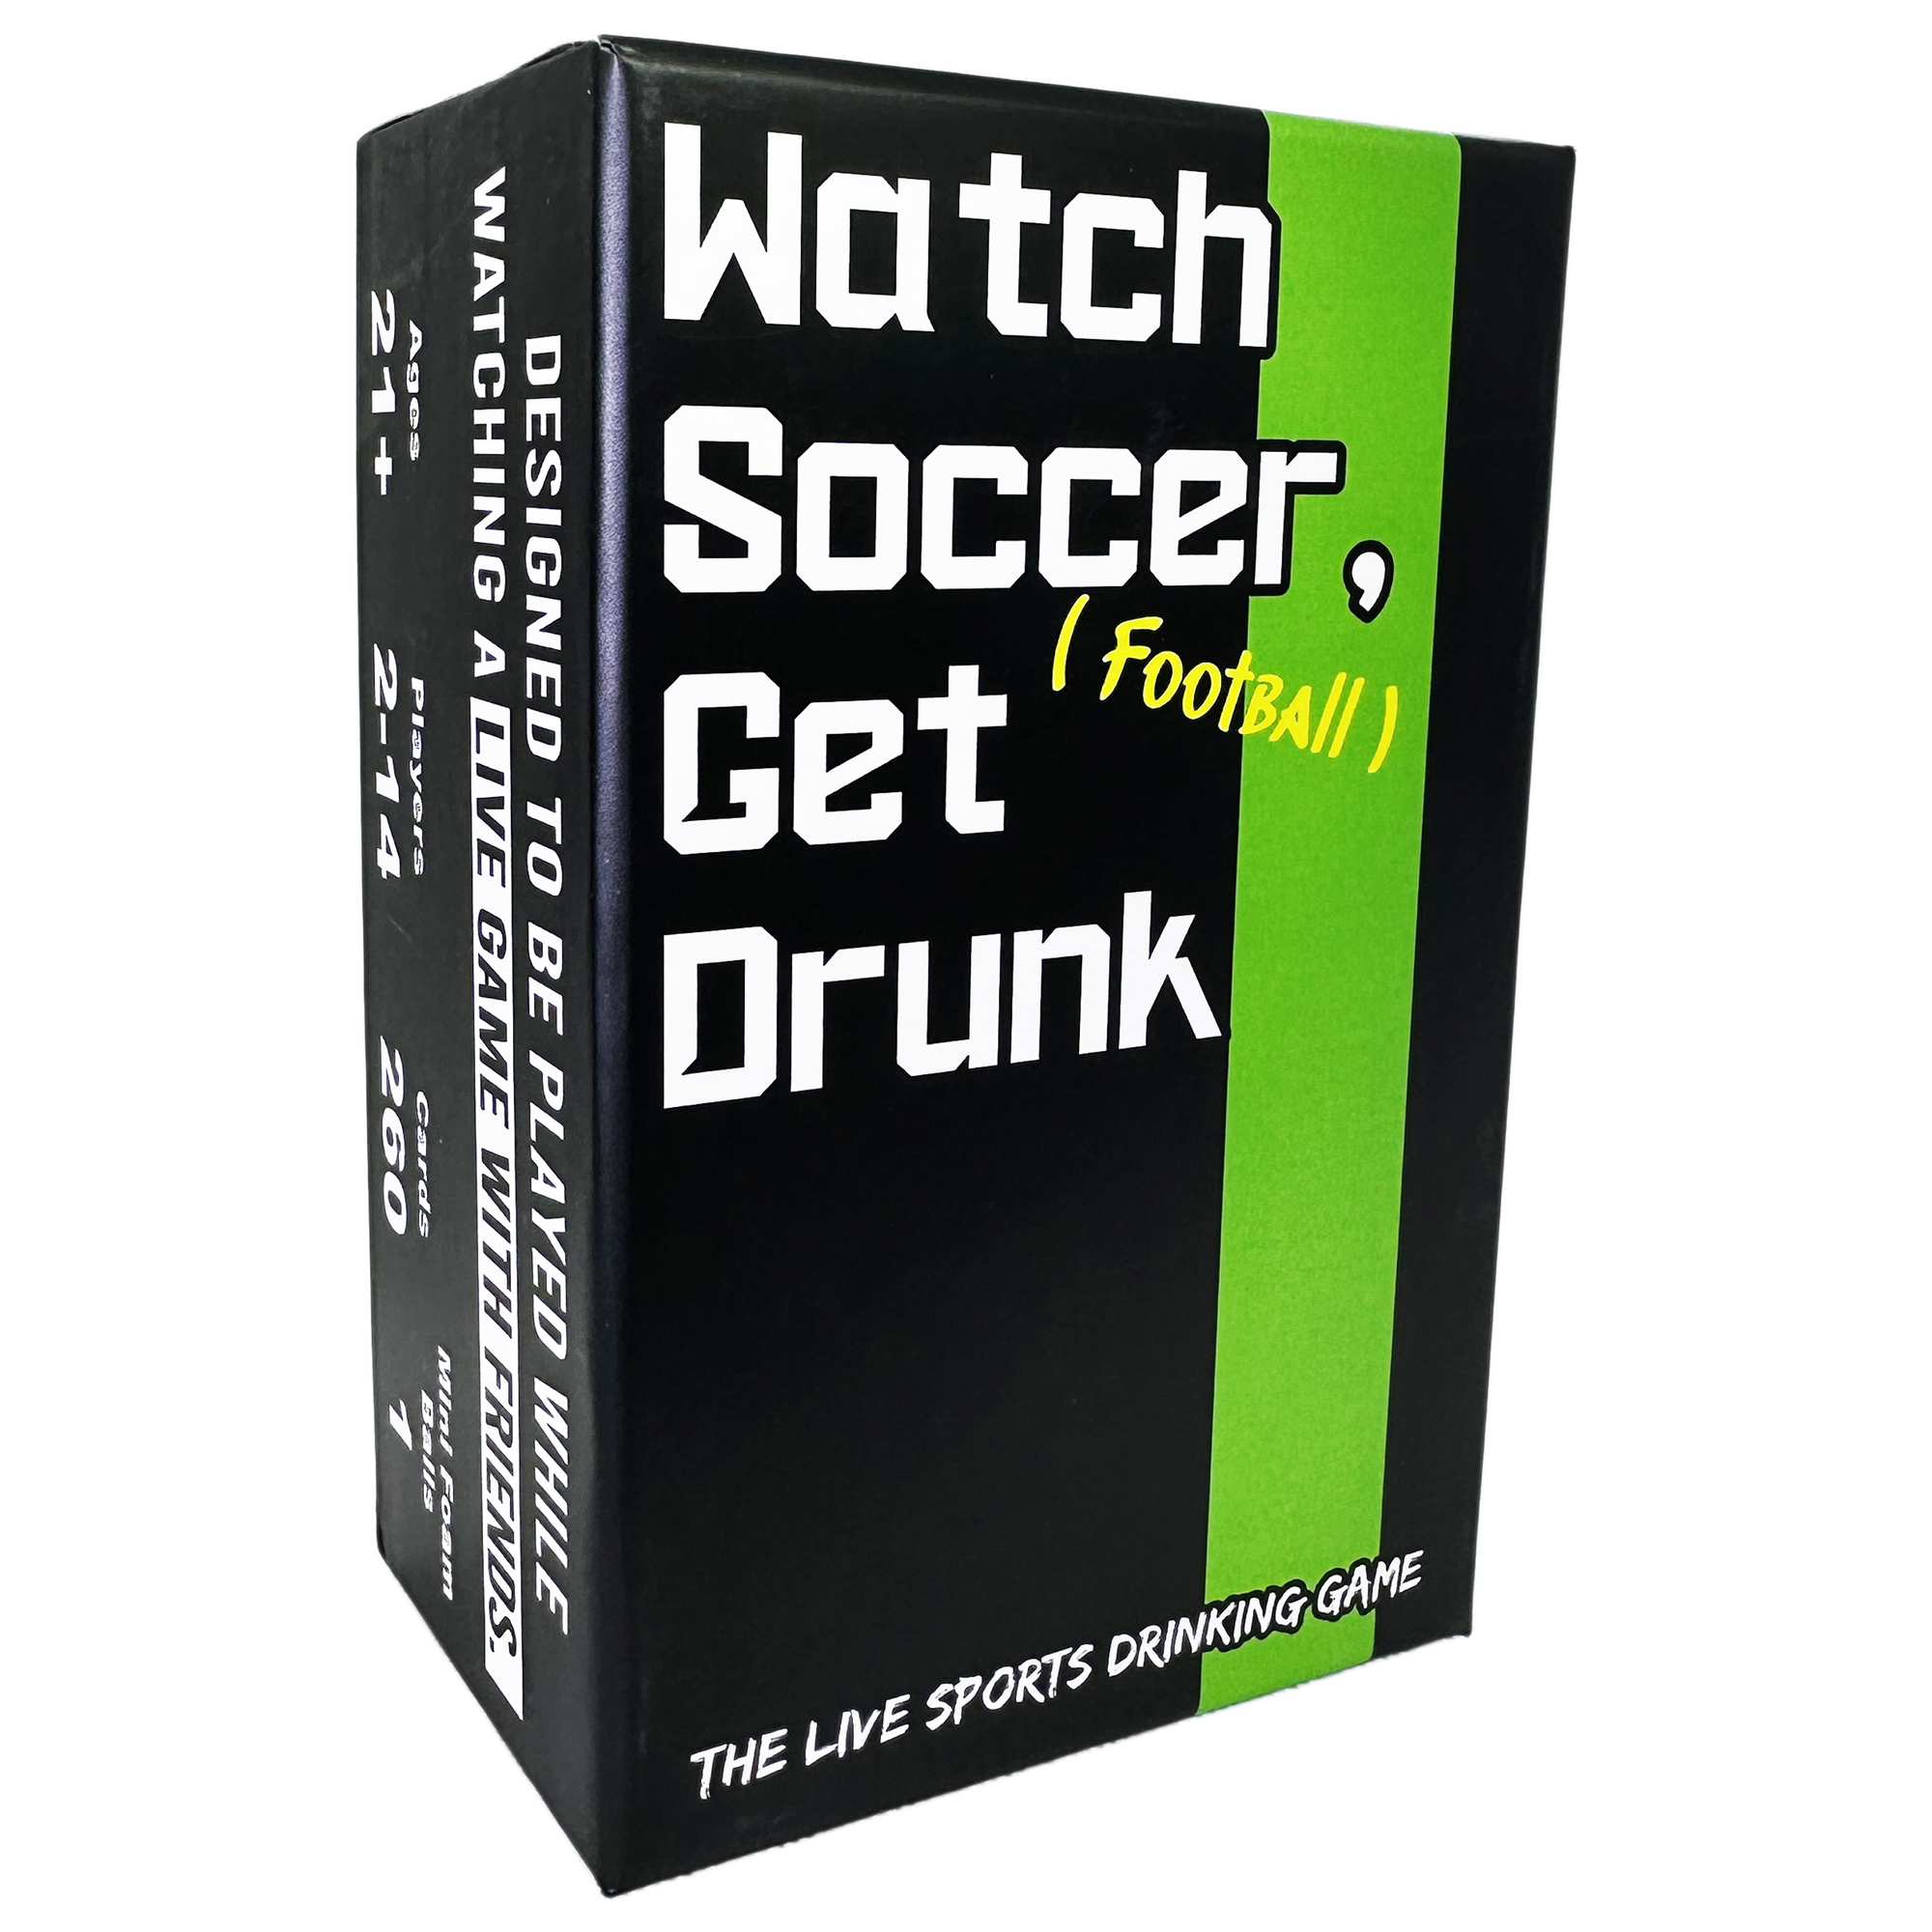 Watch Soccer, Get Drunk